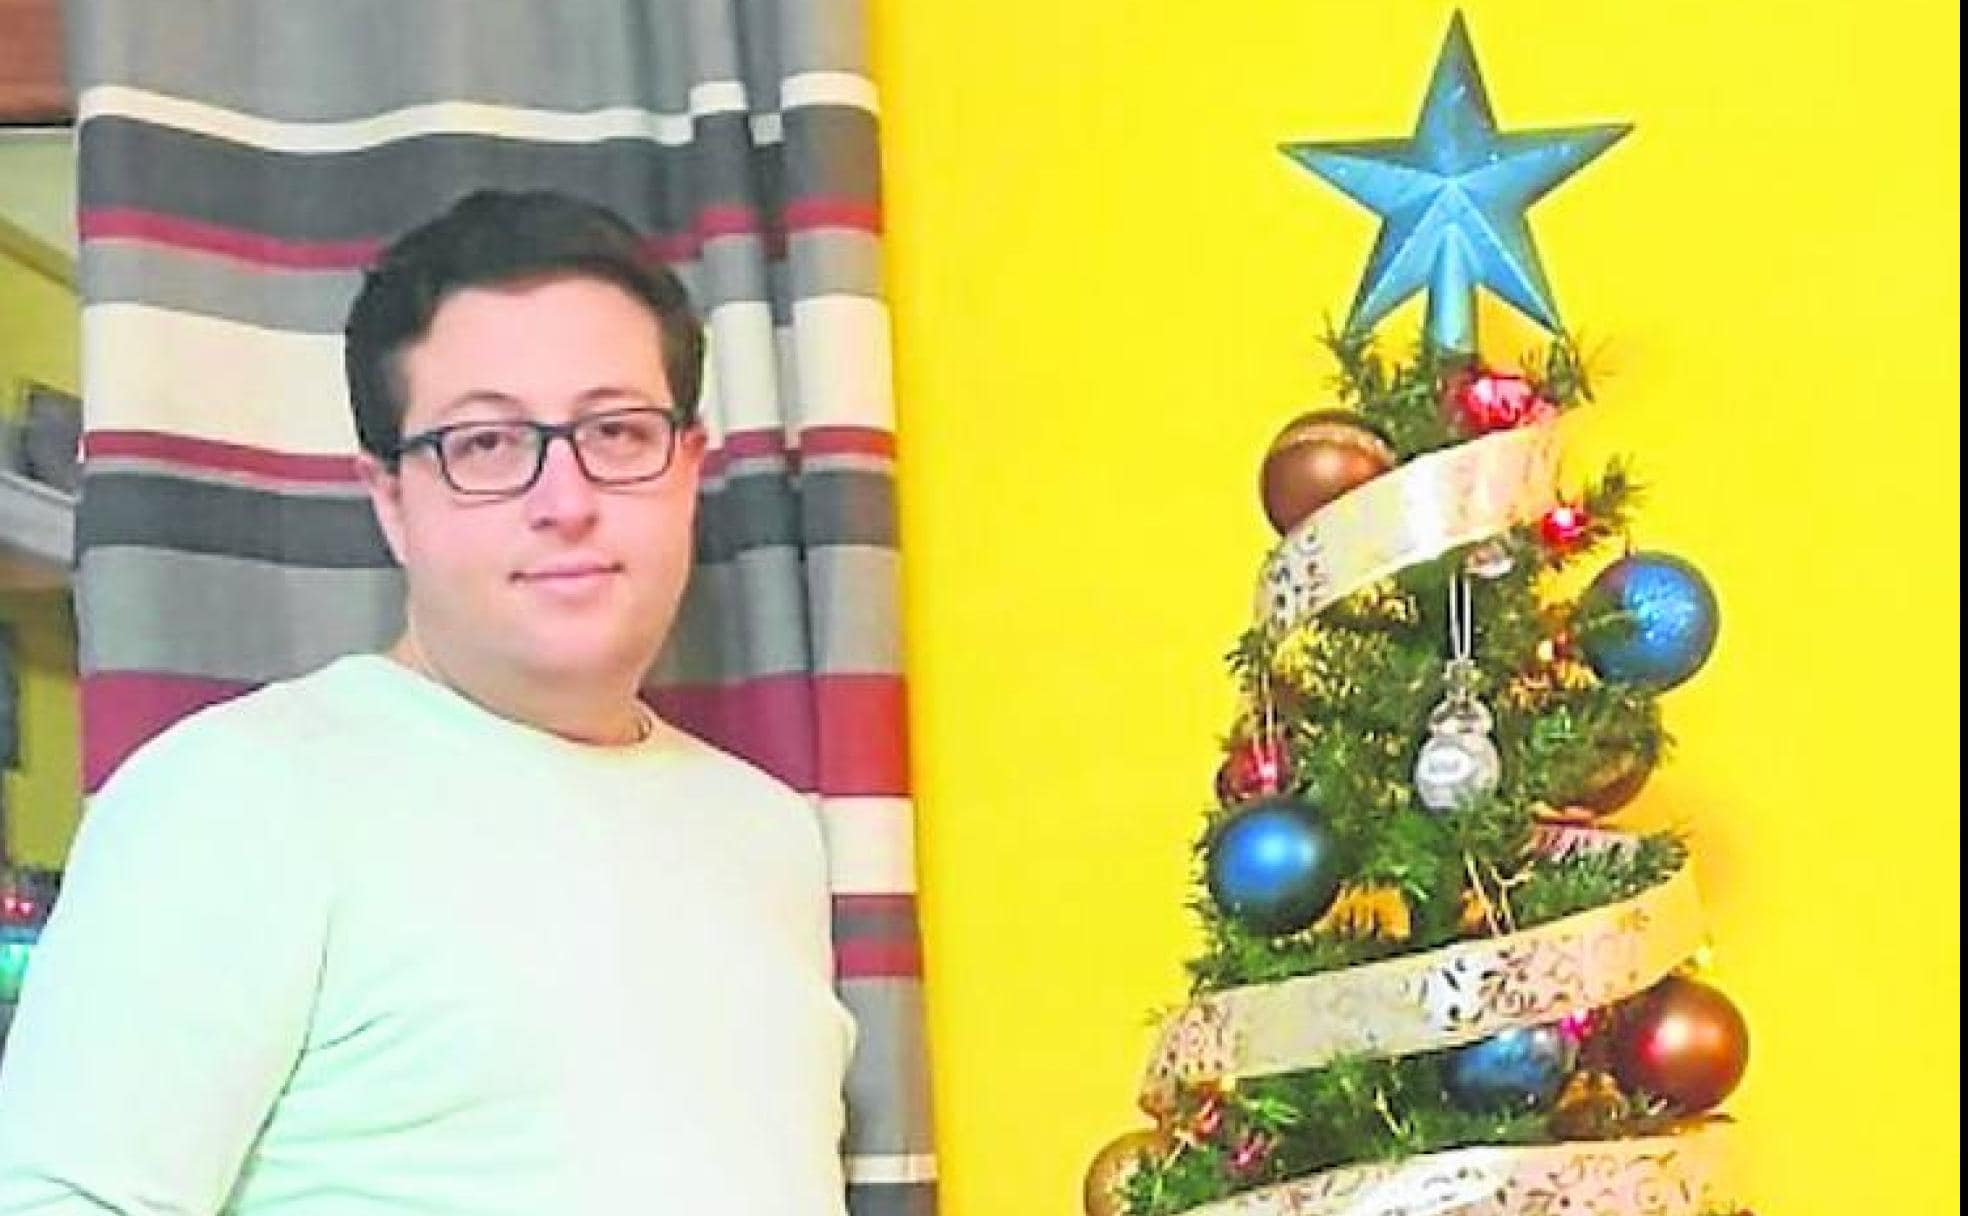 Goyo Marlasca, junto al árbol de Navidad en su casa.